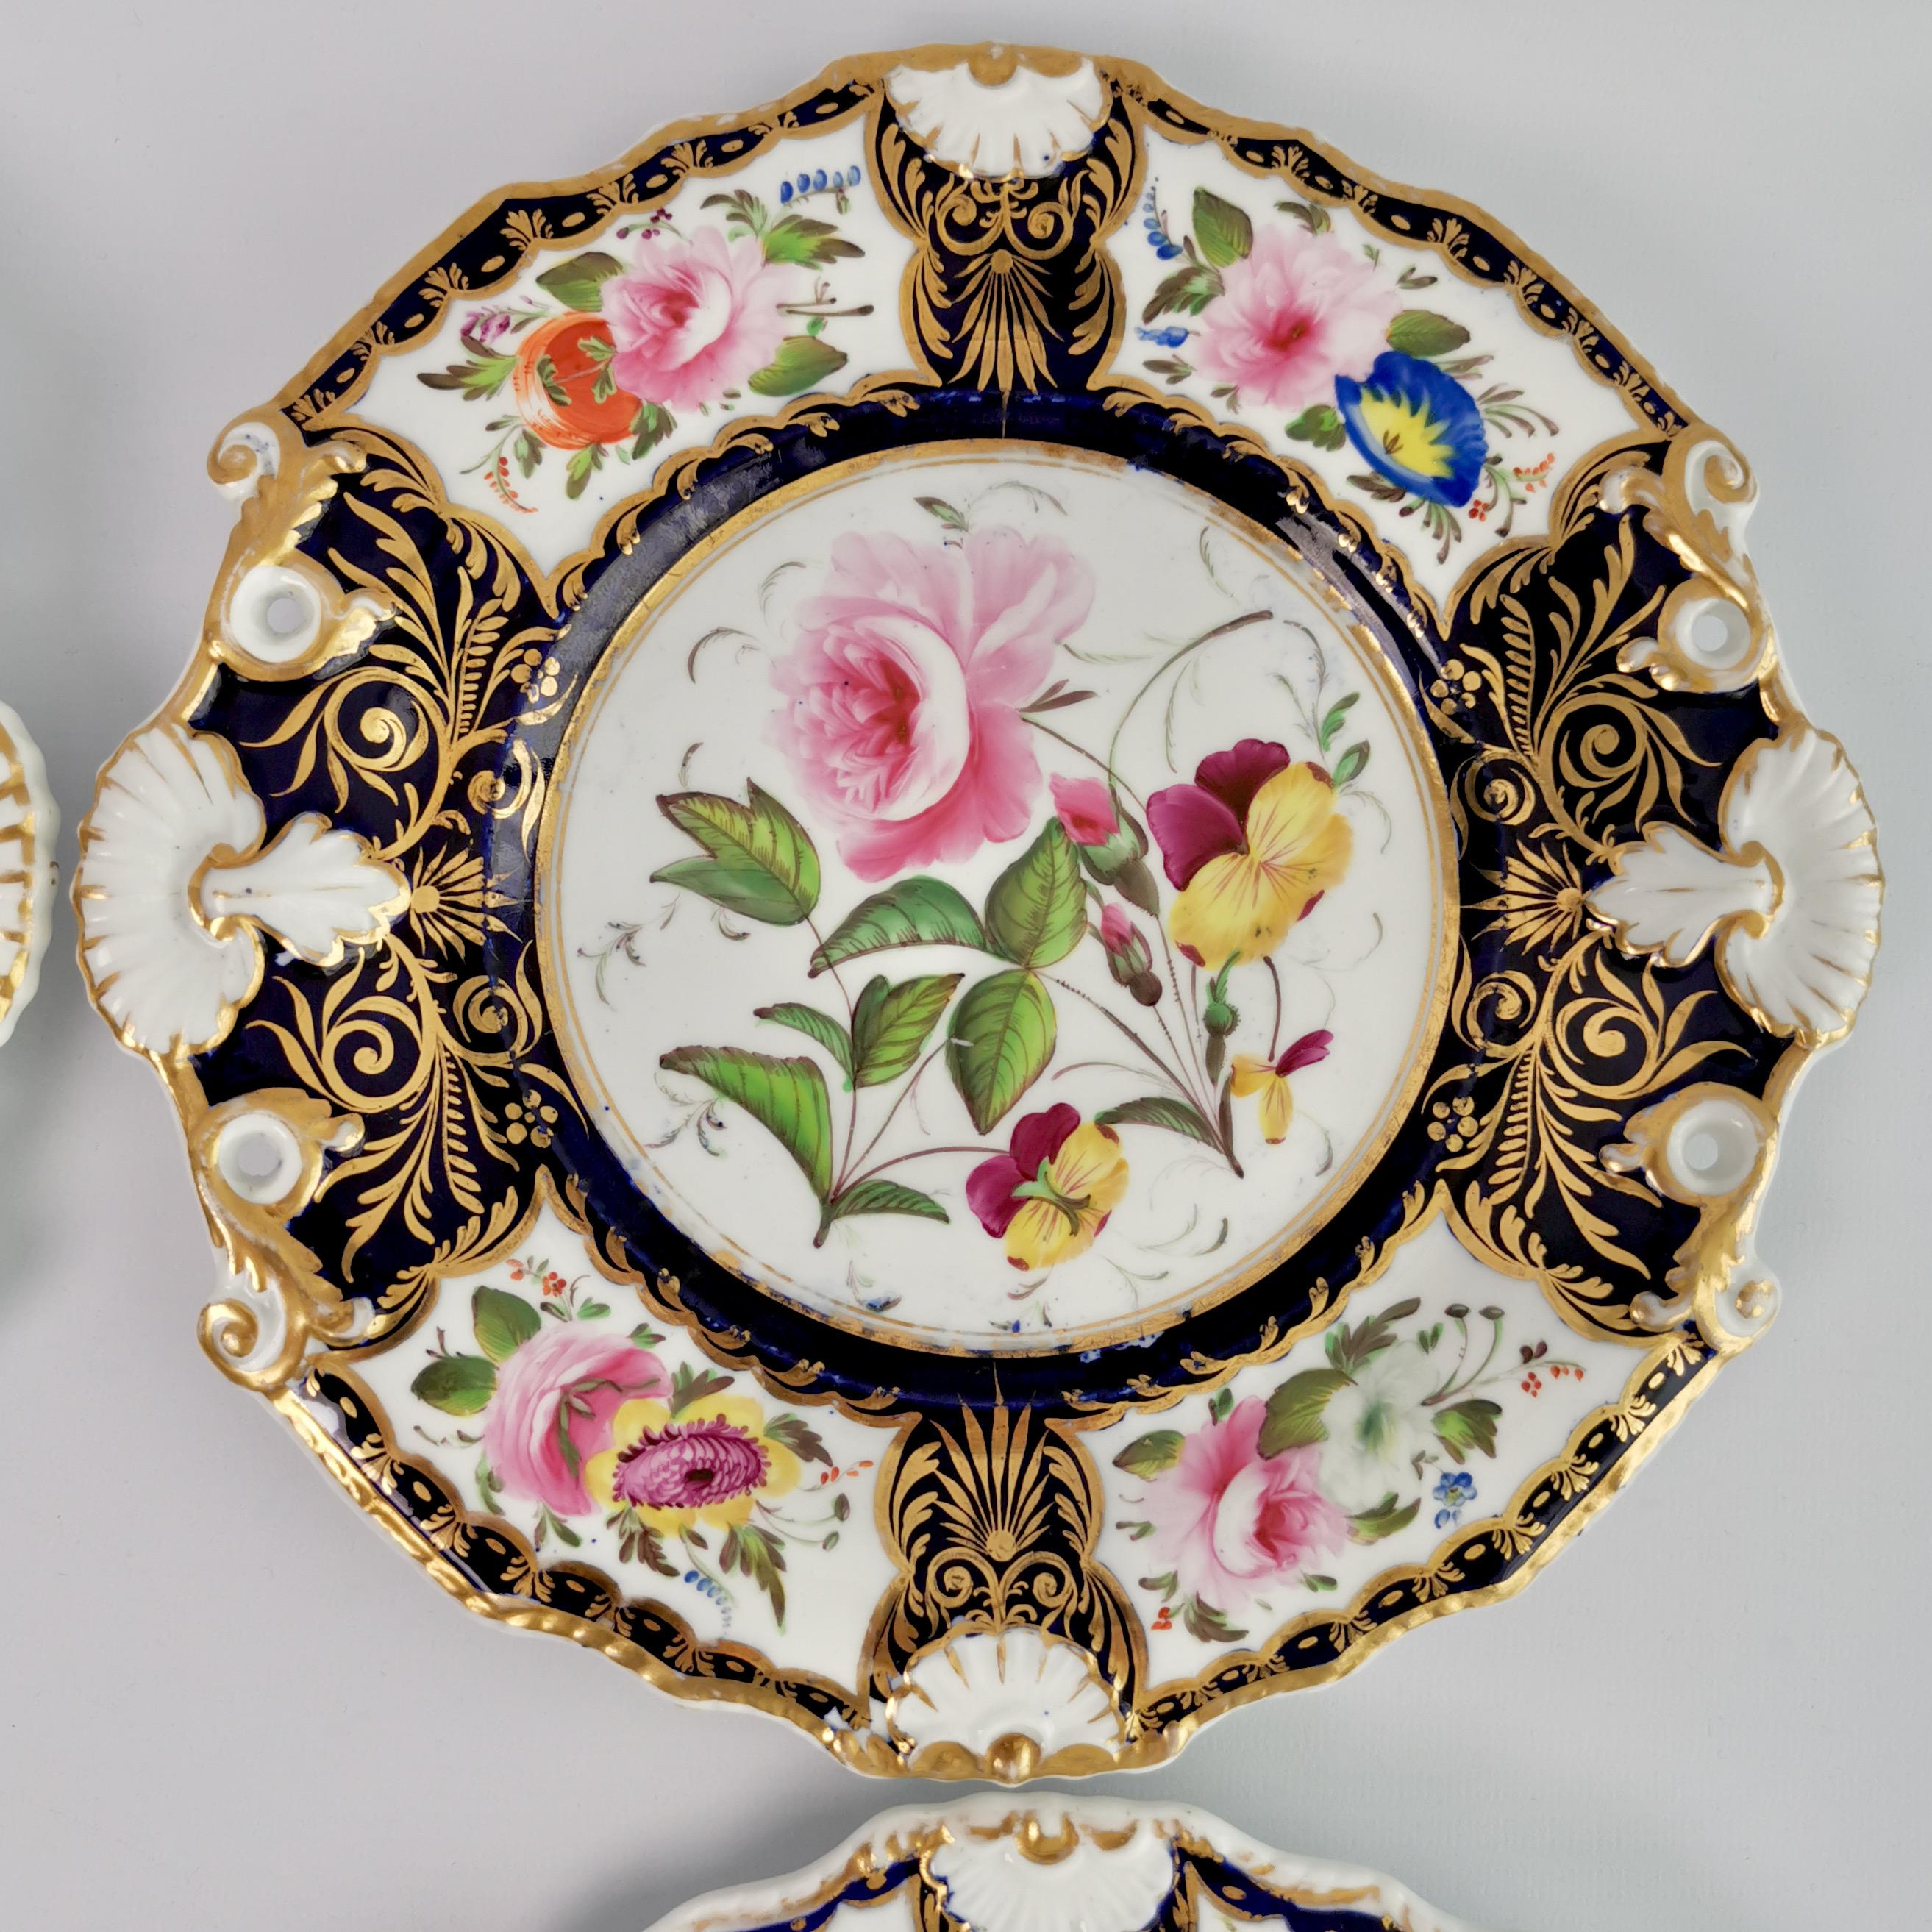 New Hall Porcelain Dessert Service, Cobalt Blue with Flowers, Regency 1824-1830 10